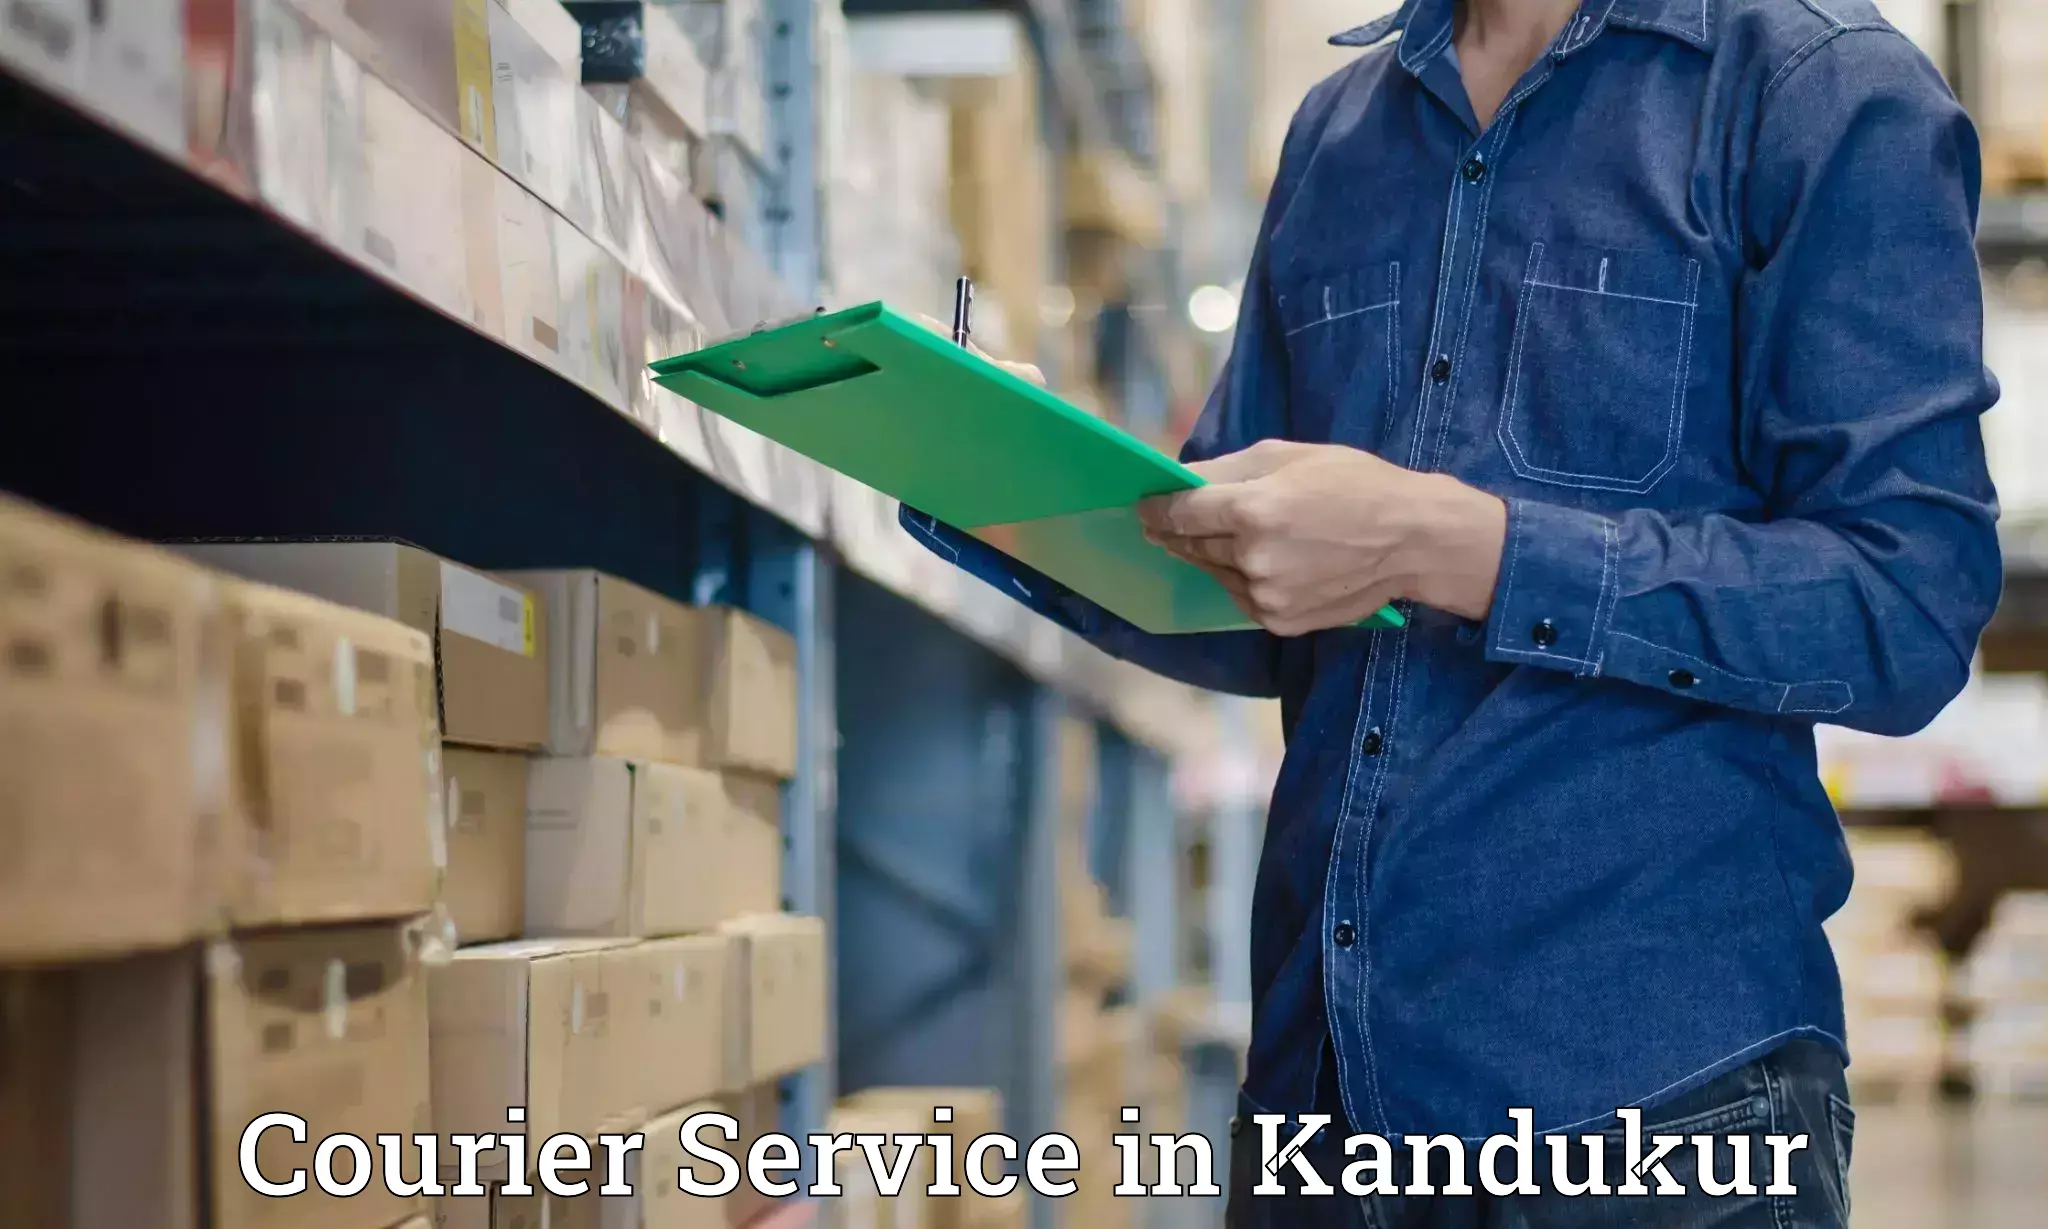 User-friendly courier app in Kandukur